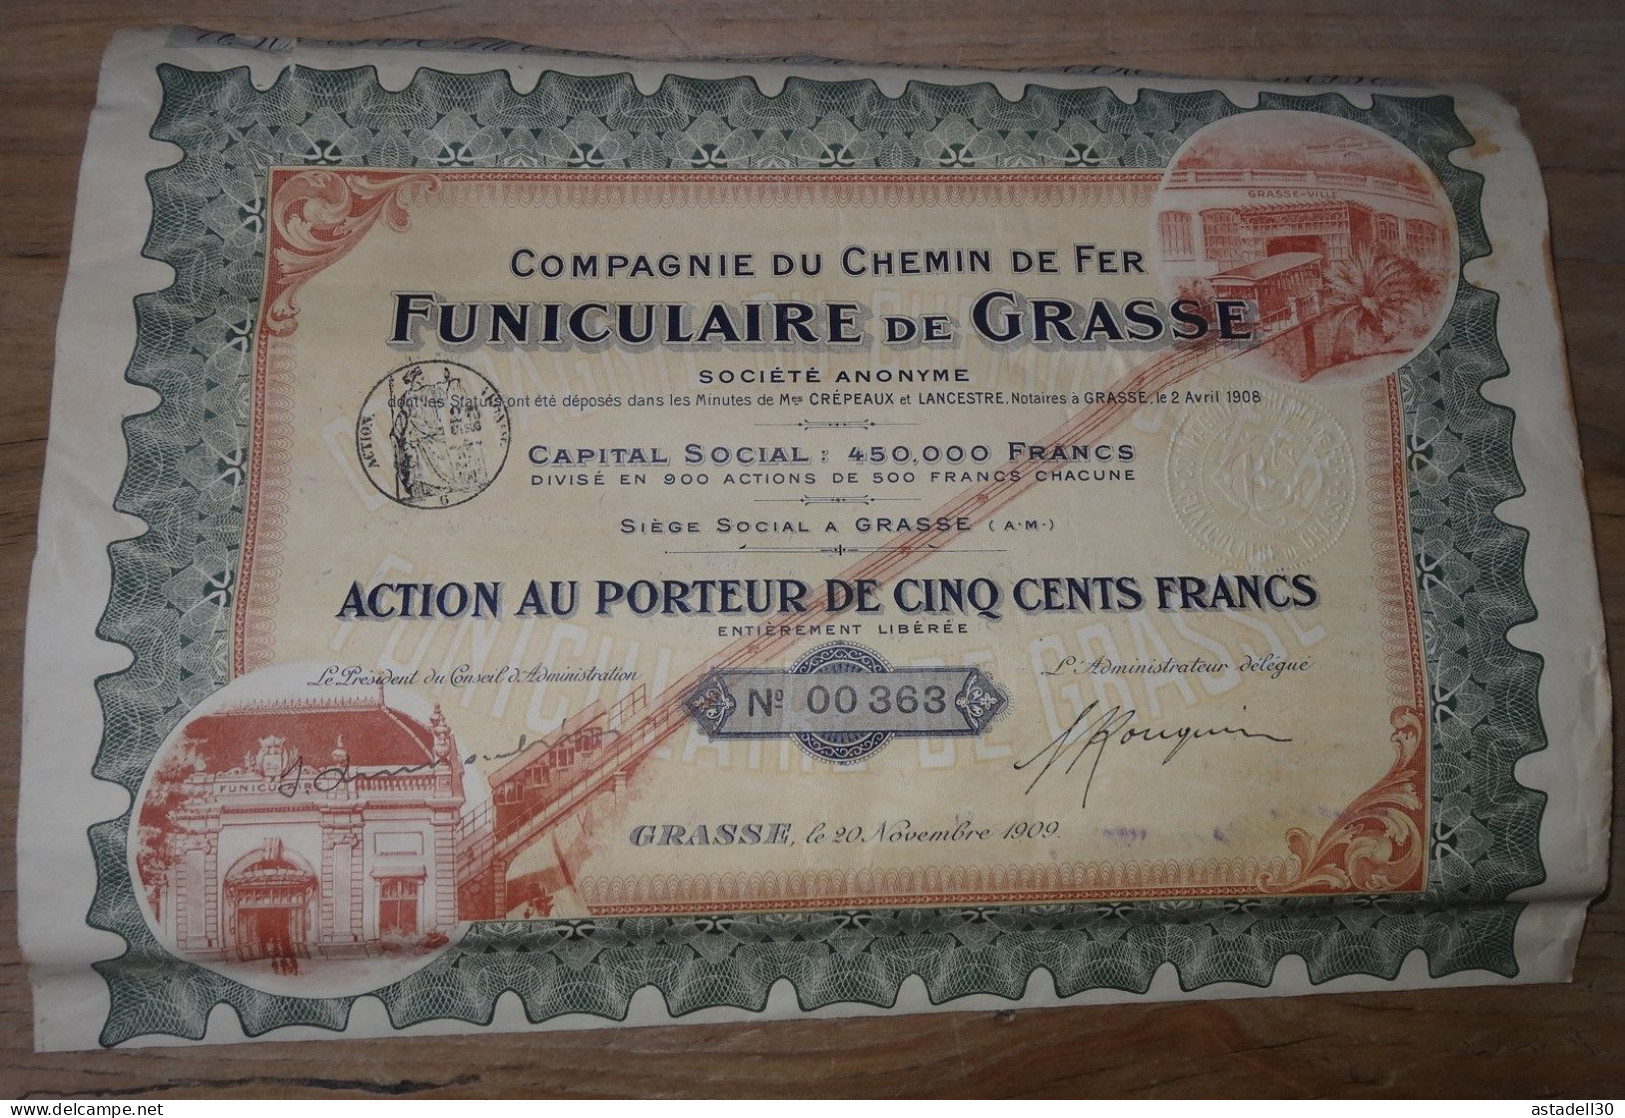 Funiculaire De GRASSE, Rare Action De 500 Francs - 1909  .......  CL9-31a - Railway & Tramway